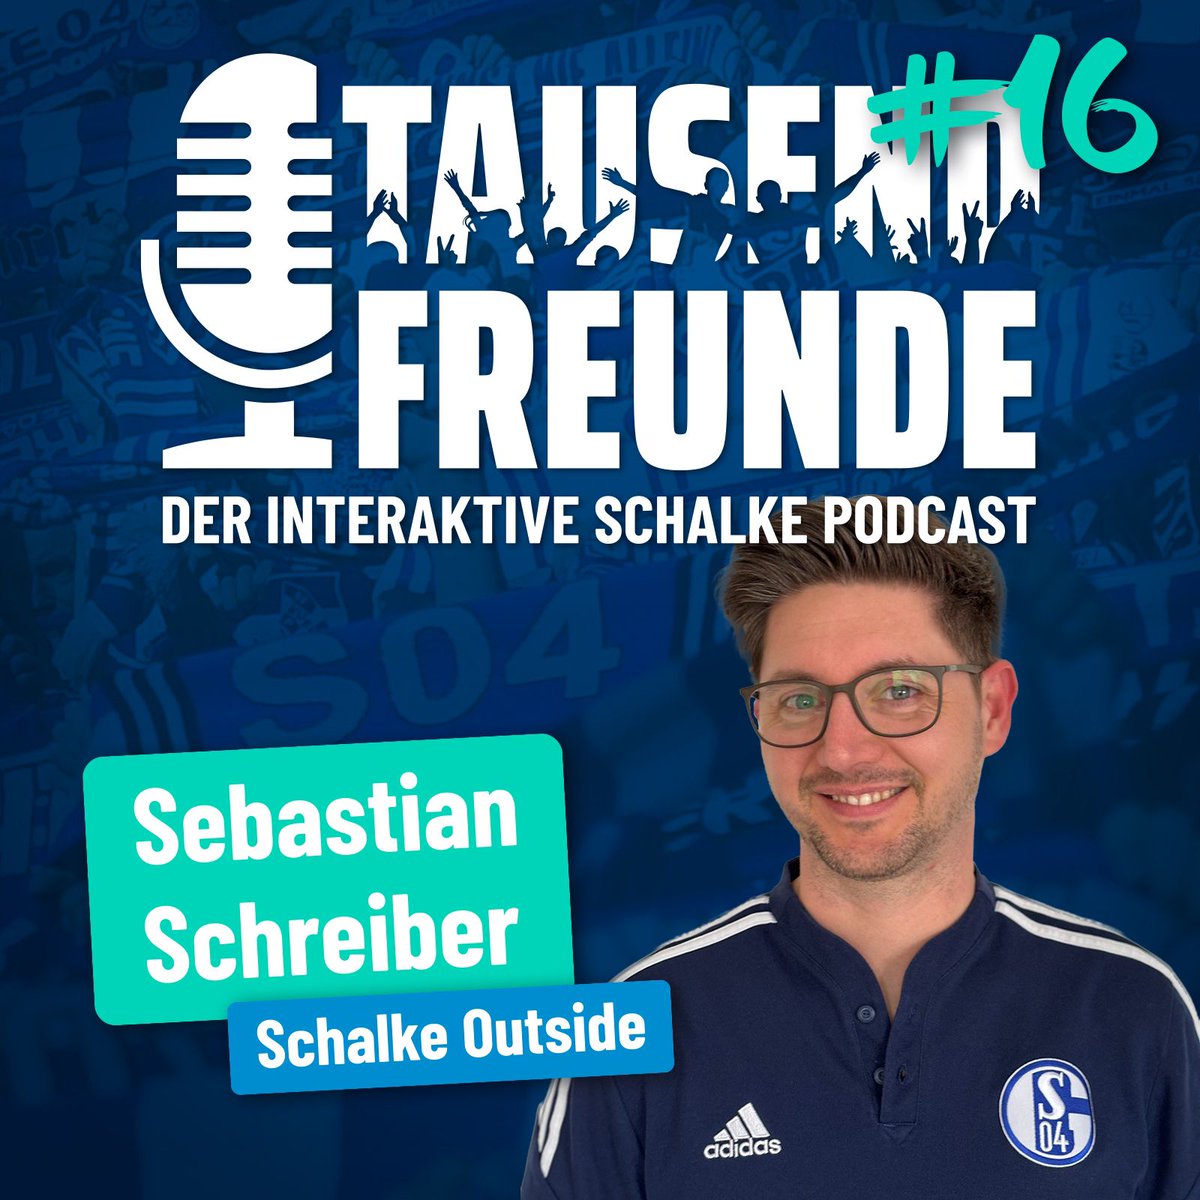 🎧 Folge #16 ist online! Mit Podcaster @Schr31ber von @Schalke_Outside und unserem Publikum sprachen wir über den Sport und Karel Geraerts. Außerdem haben wir die ersten 100 Tagen unter Matthias Tillmann beleuchtet und eingeordnet. Jetzt, überall wo es Podcasts gibt! #S04